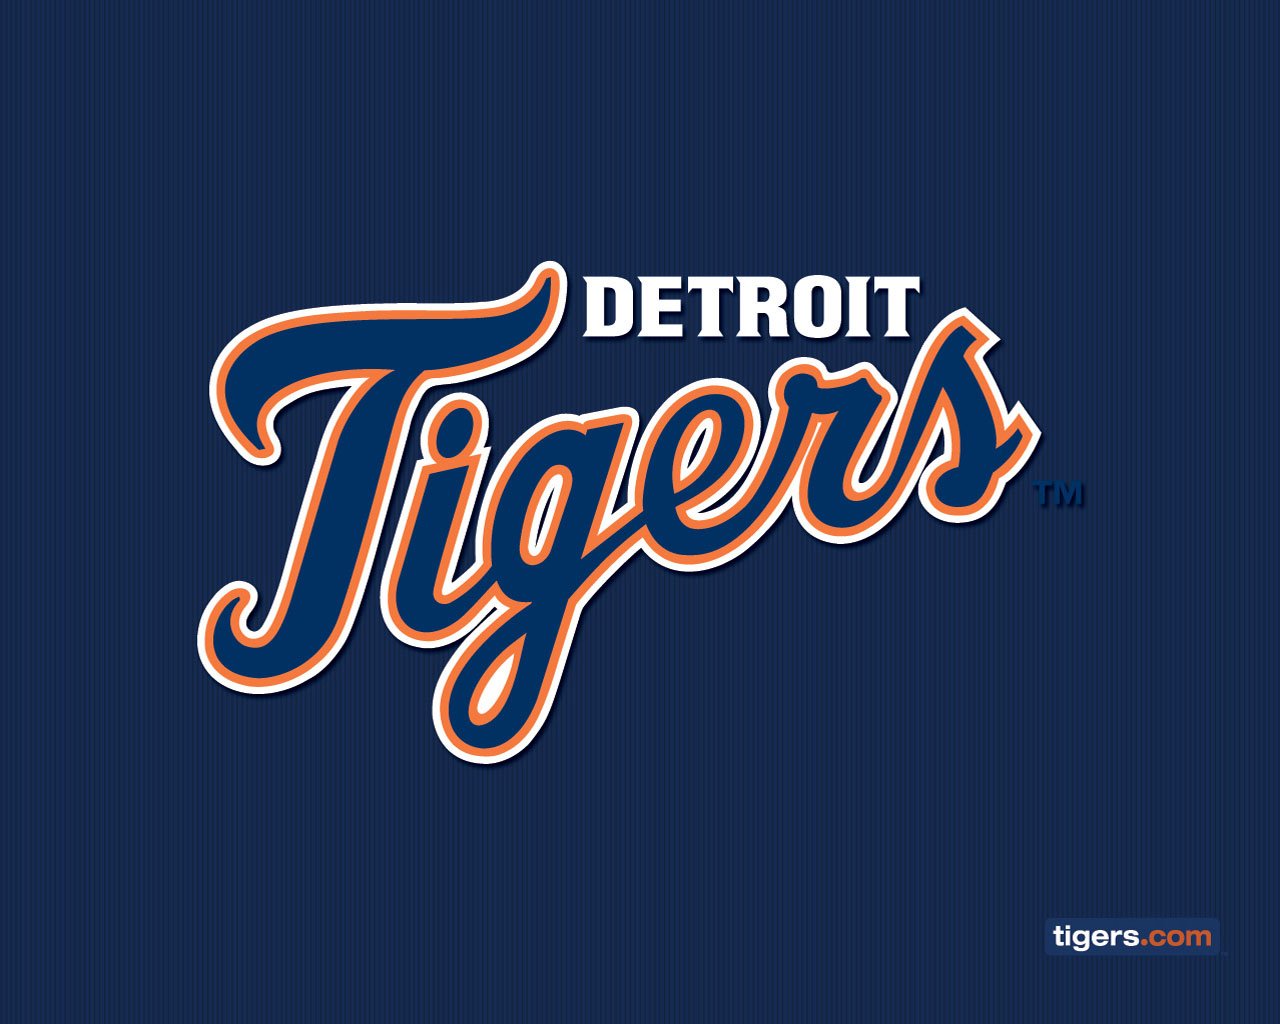 detroit tigers wallpaper,font,text,logo,brand,graphics